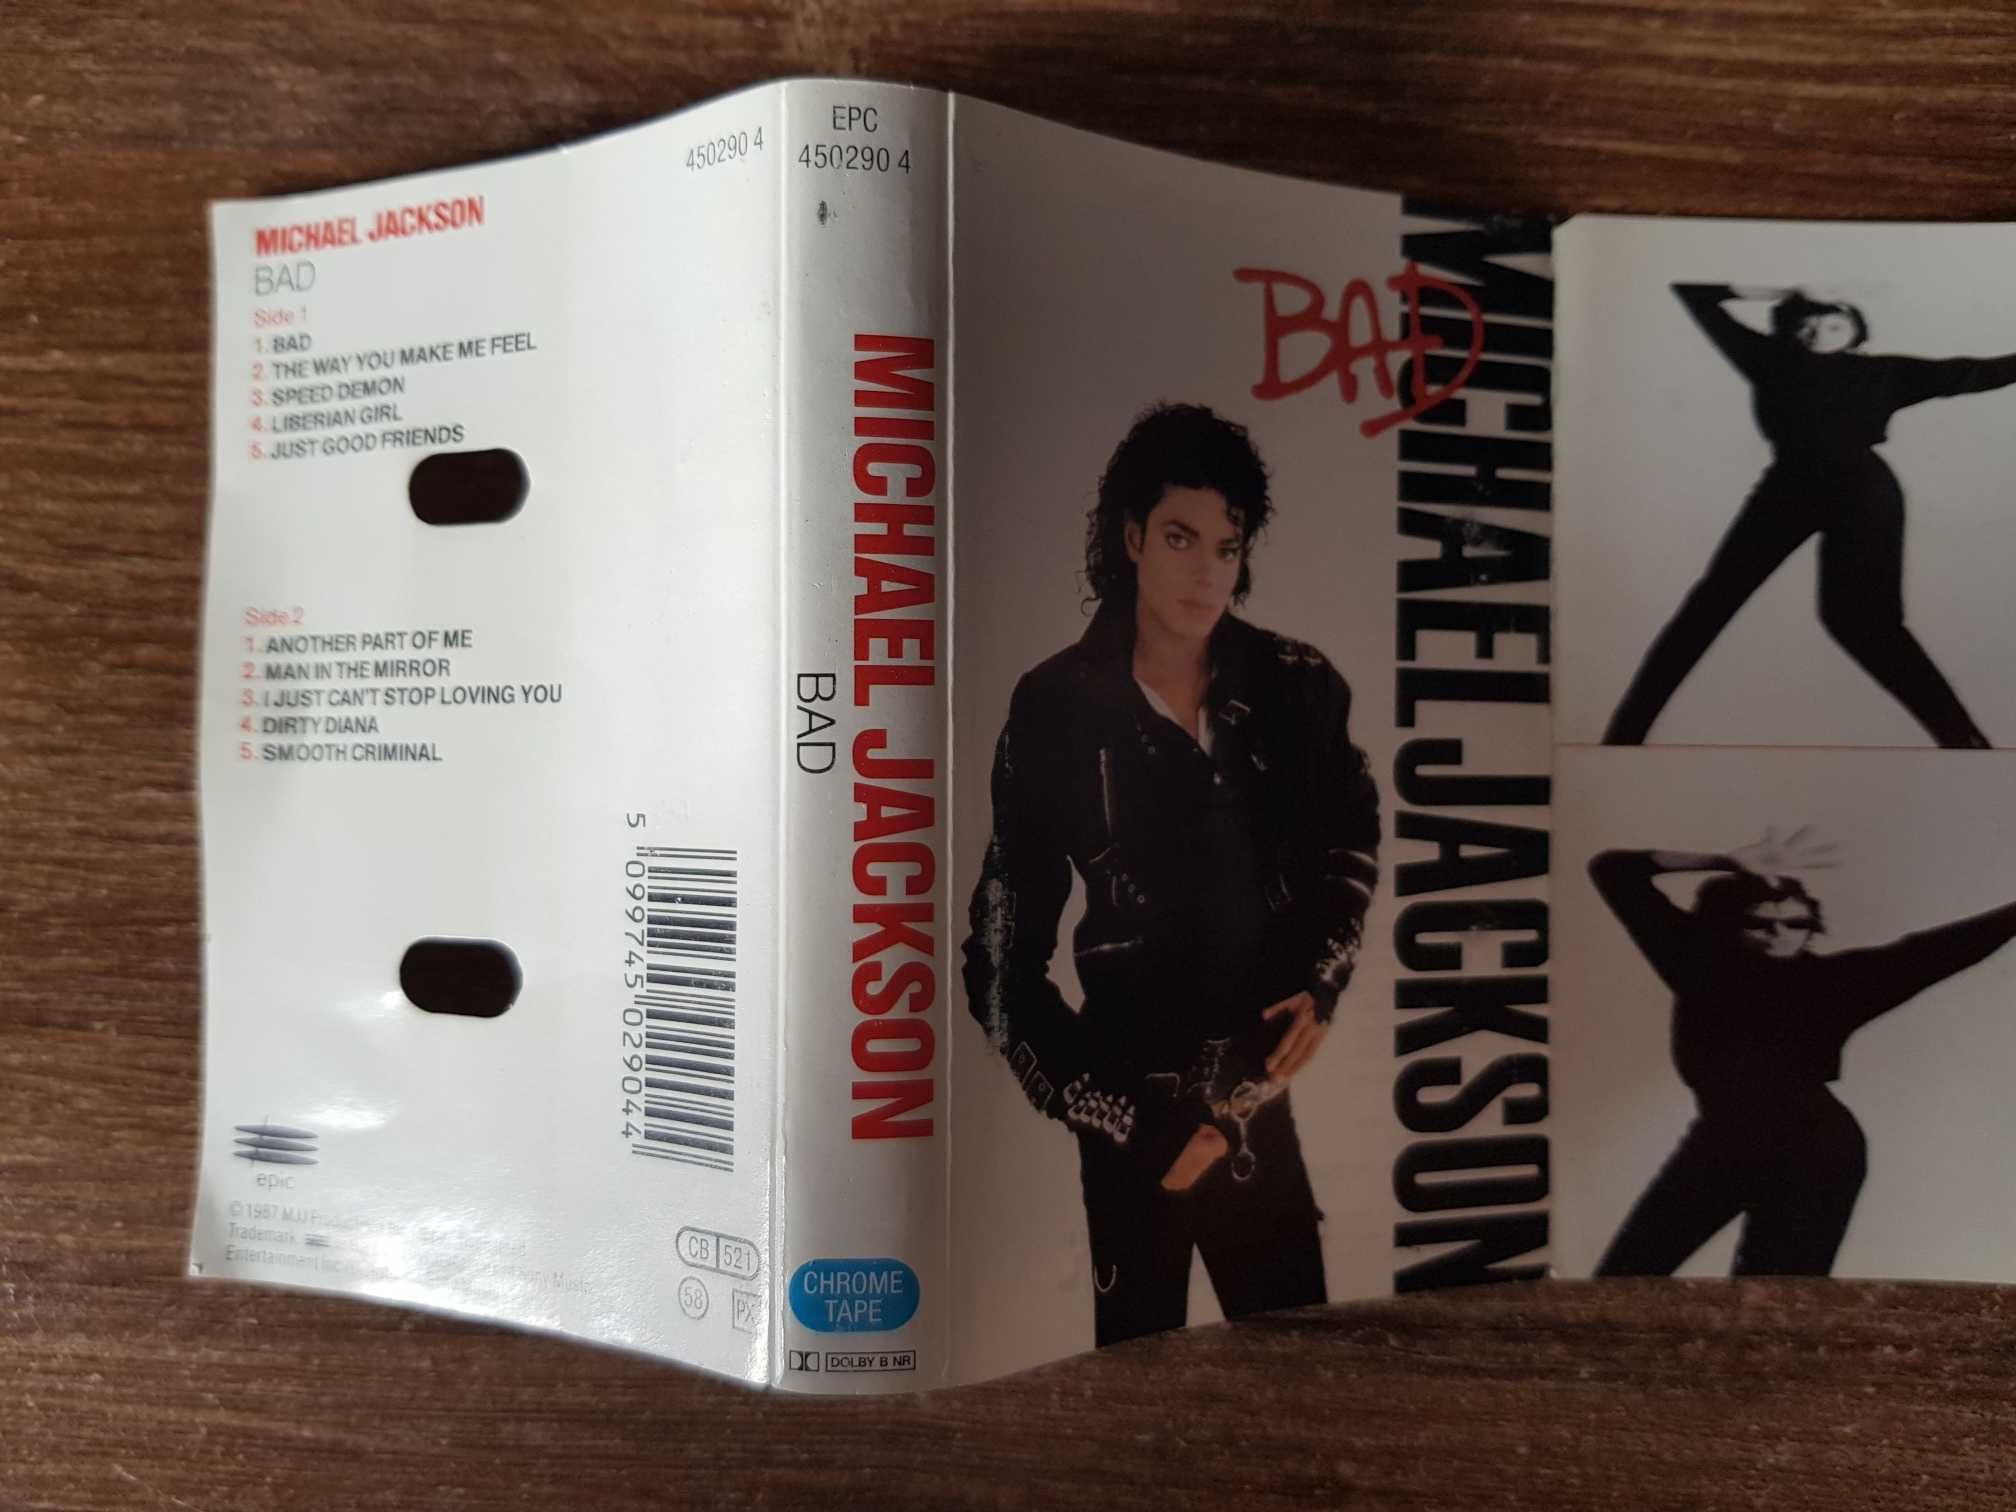 Michael Jackson BAD oryginalna kaseta magnetofonowa MJJ Production